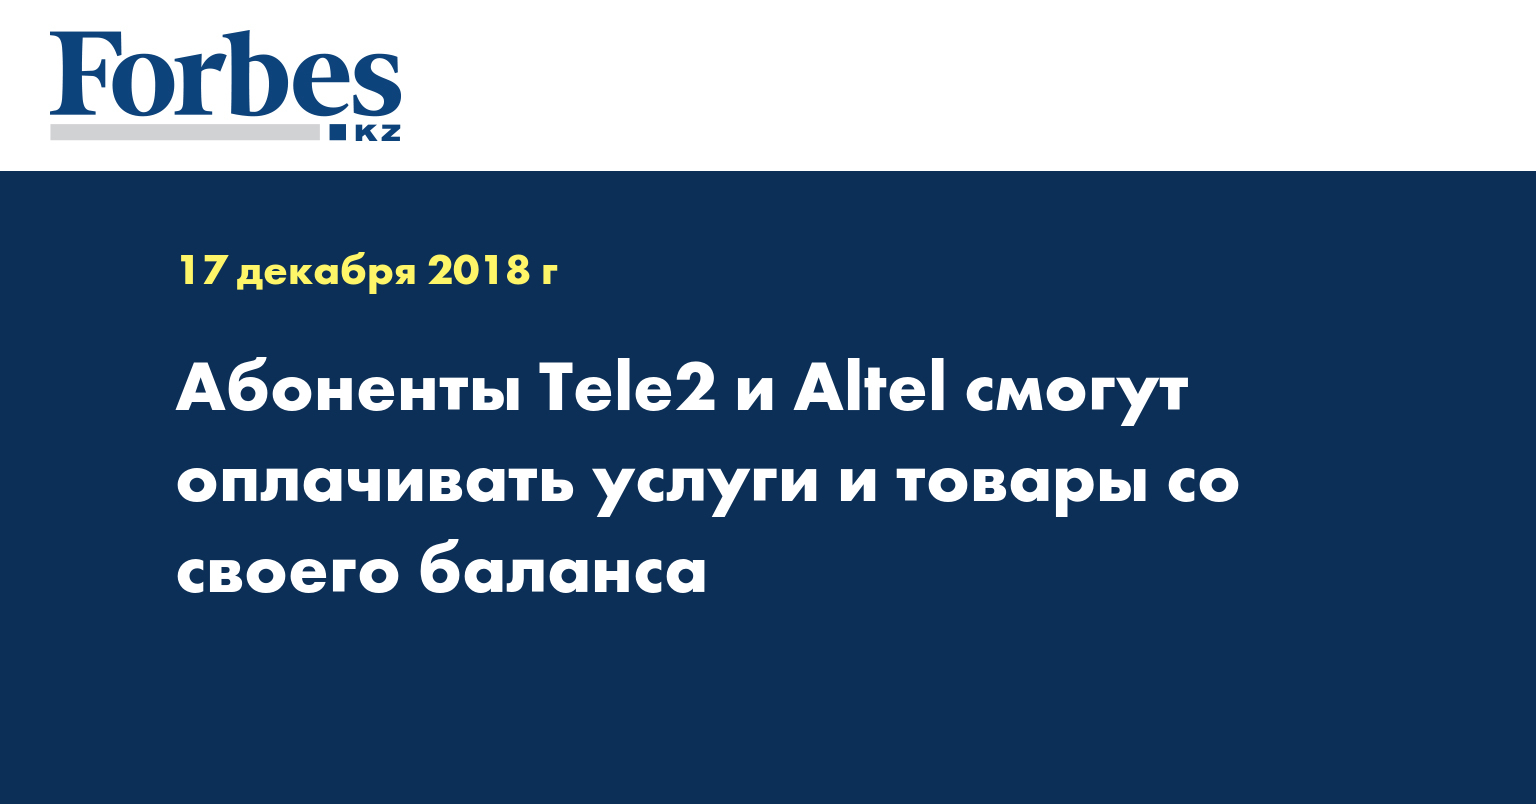 Абоненты Tele2 и Altel смогут оплачивать услуги и товары со своего баланса  